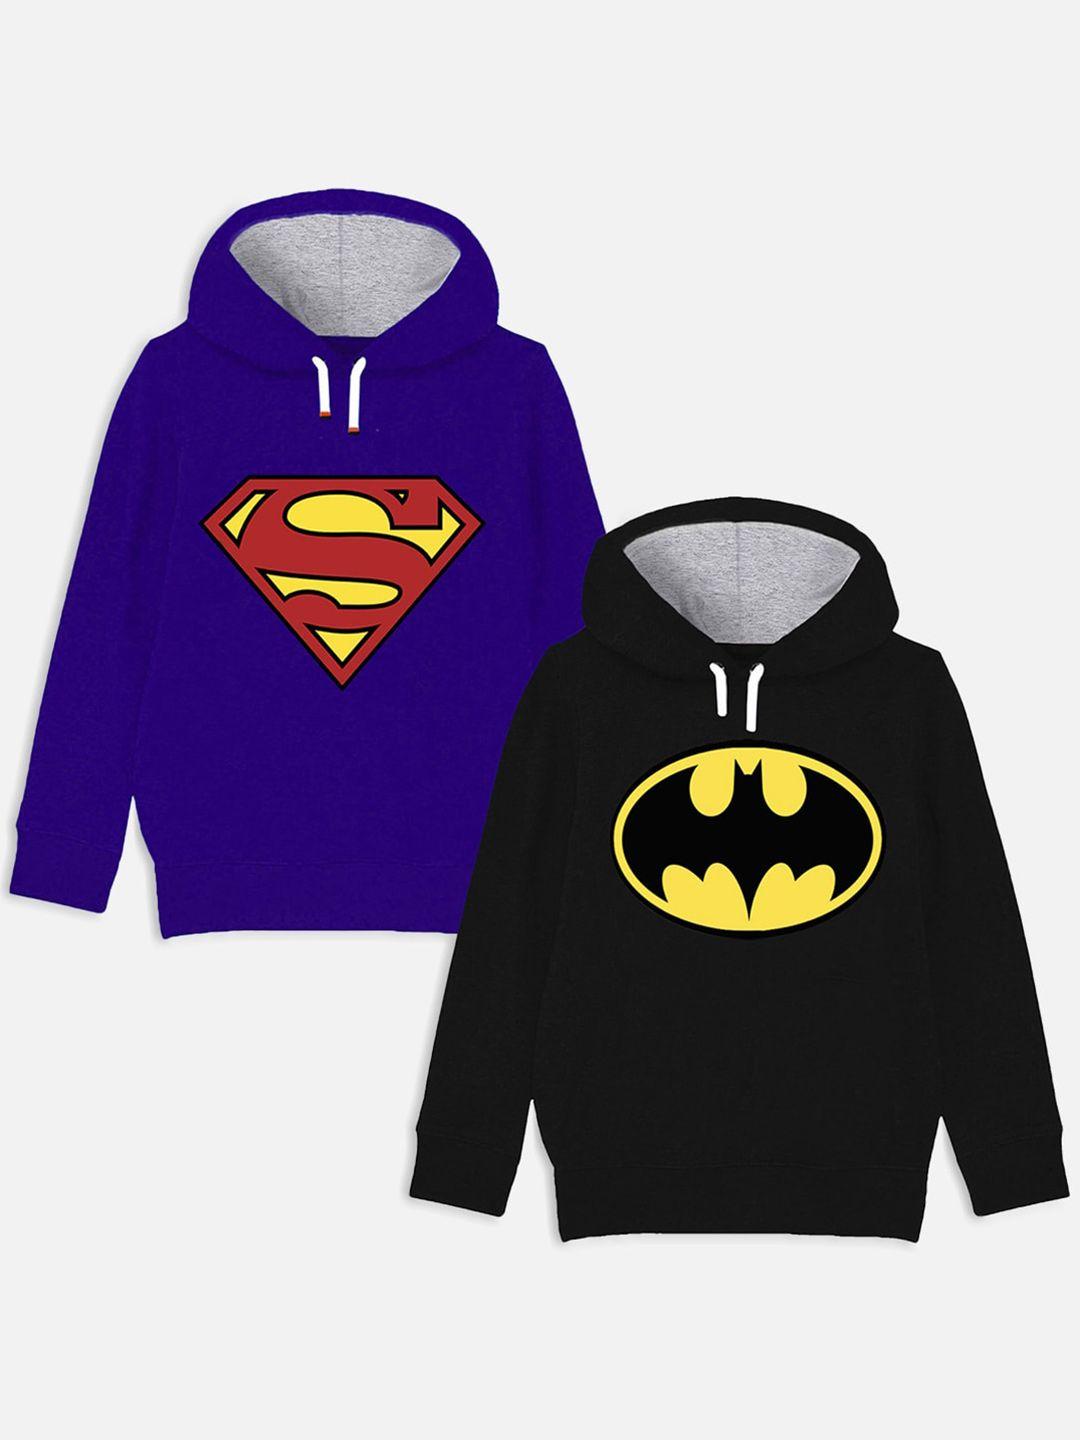 yk justice league boys pack of 2 batman & superman printed hooded sweatshirt